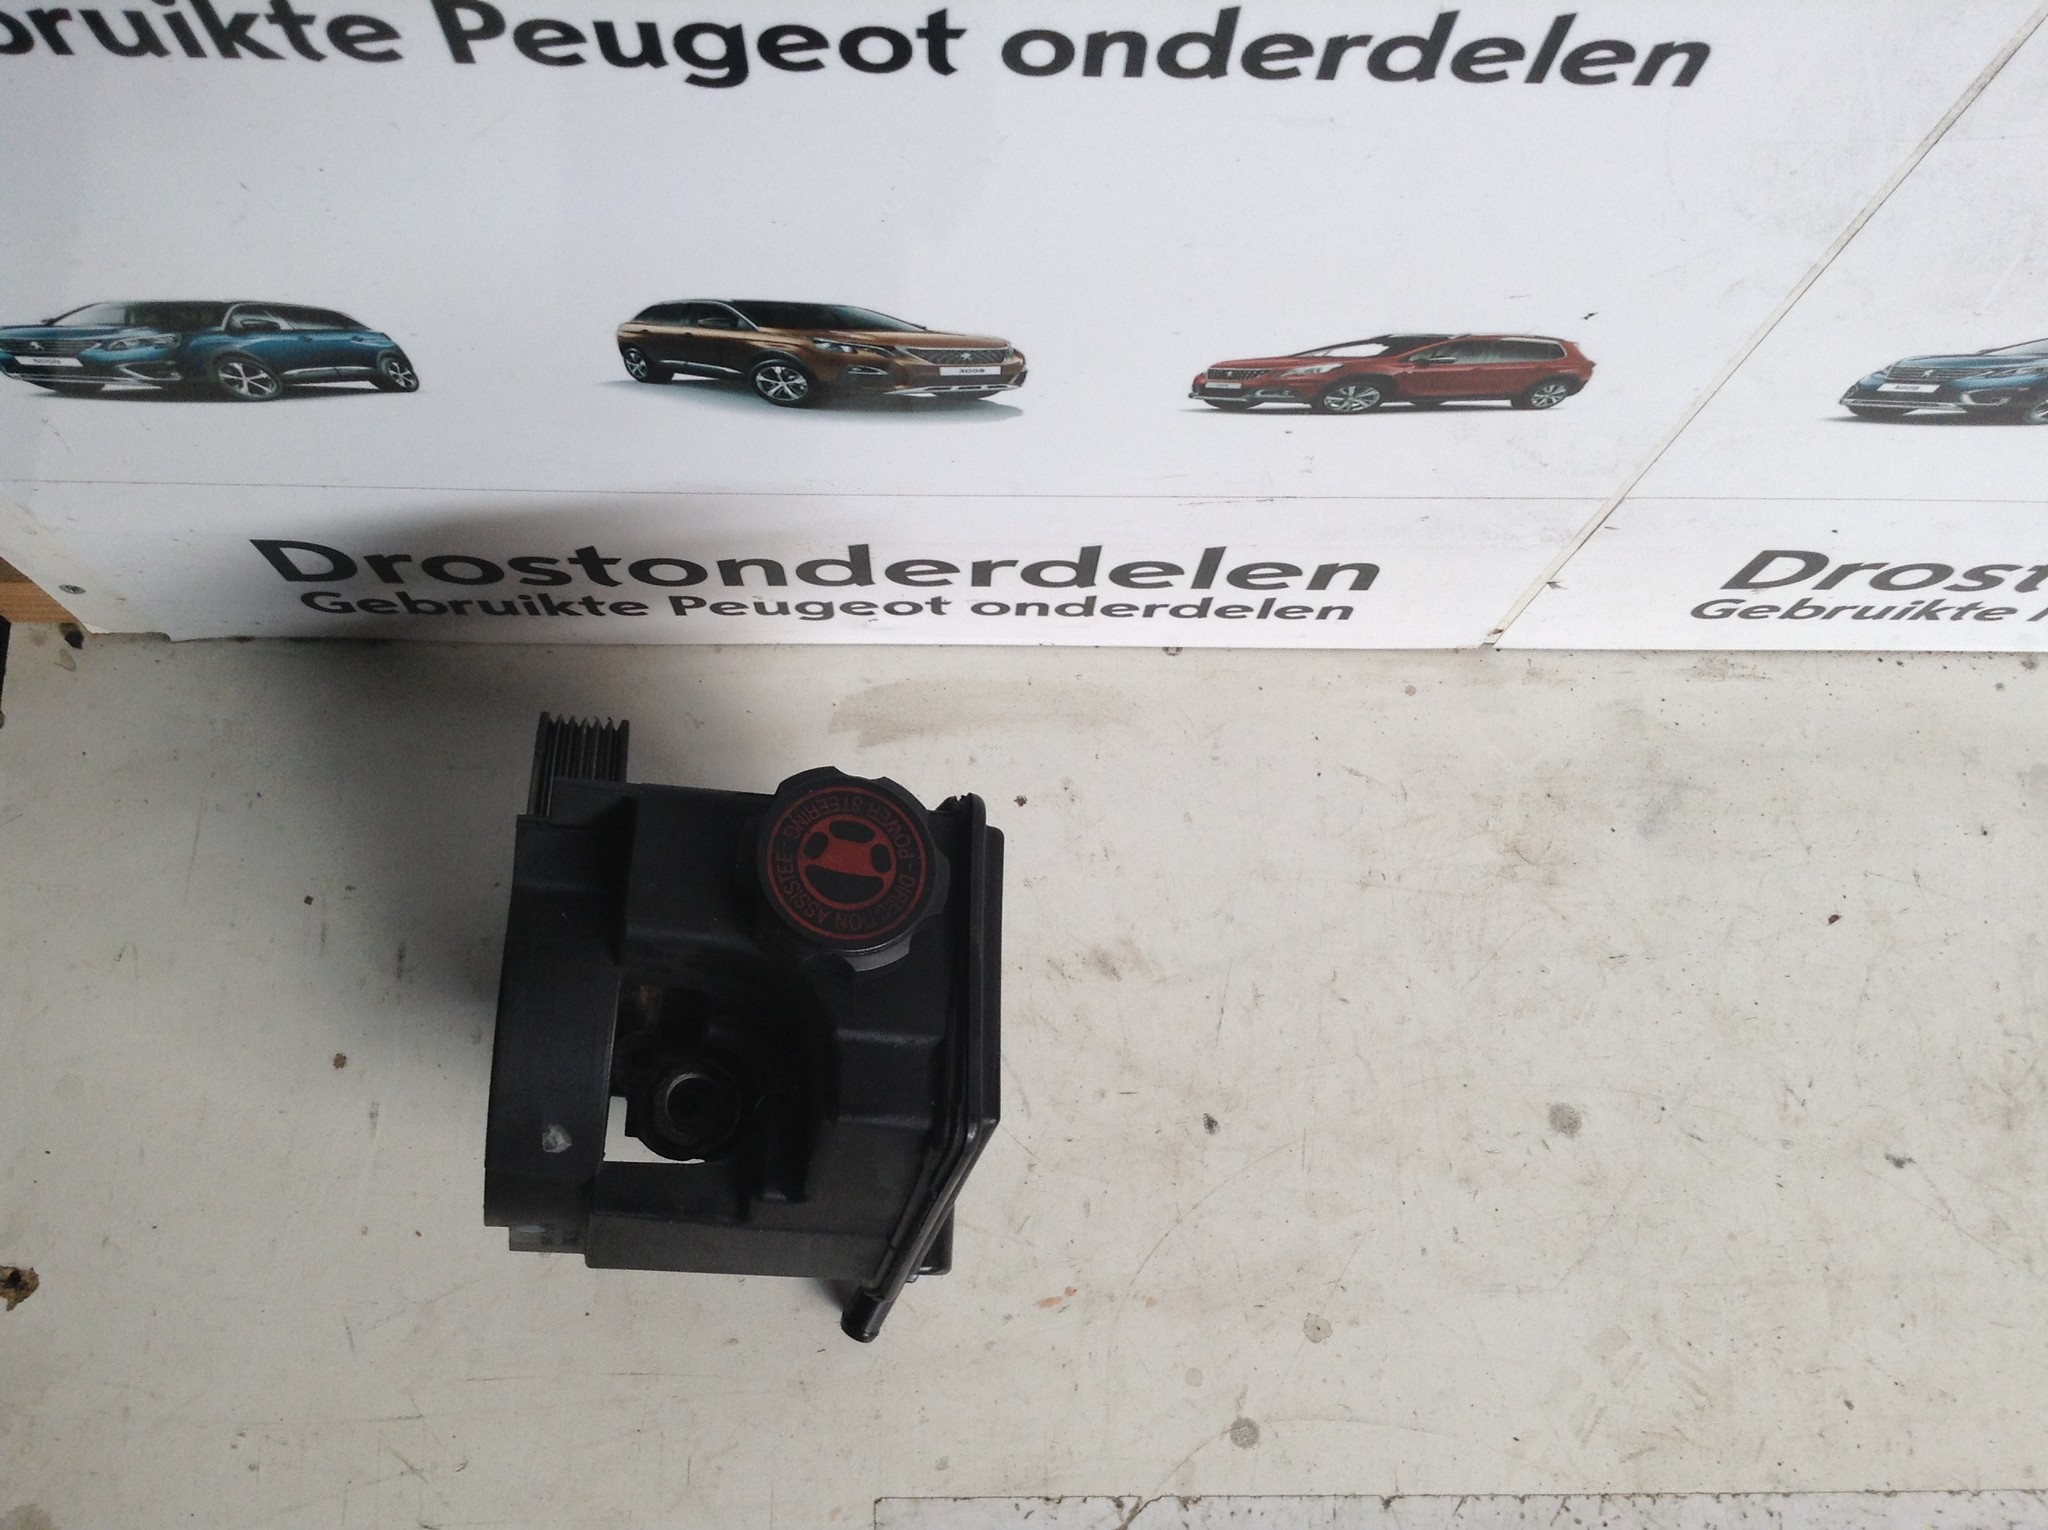 Peugeot 206 Antenne Versterkers voorraad